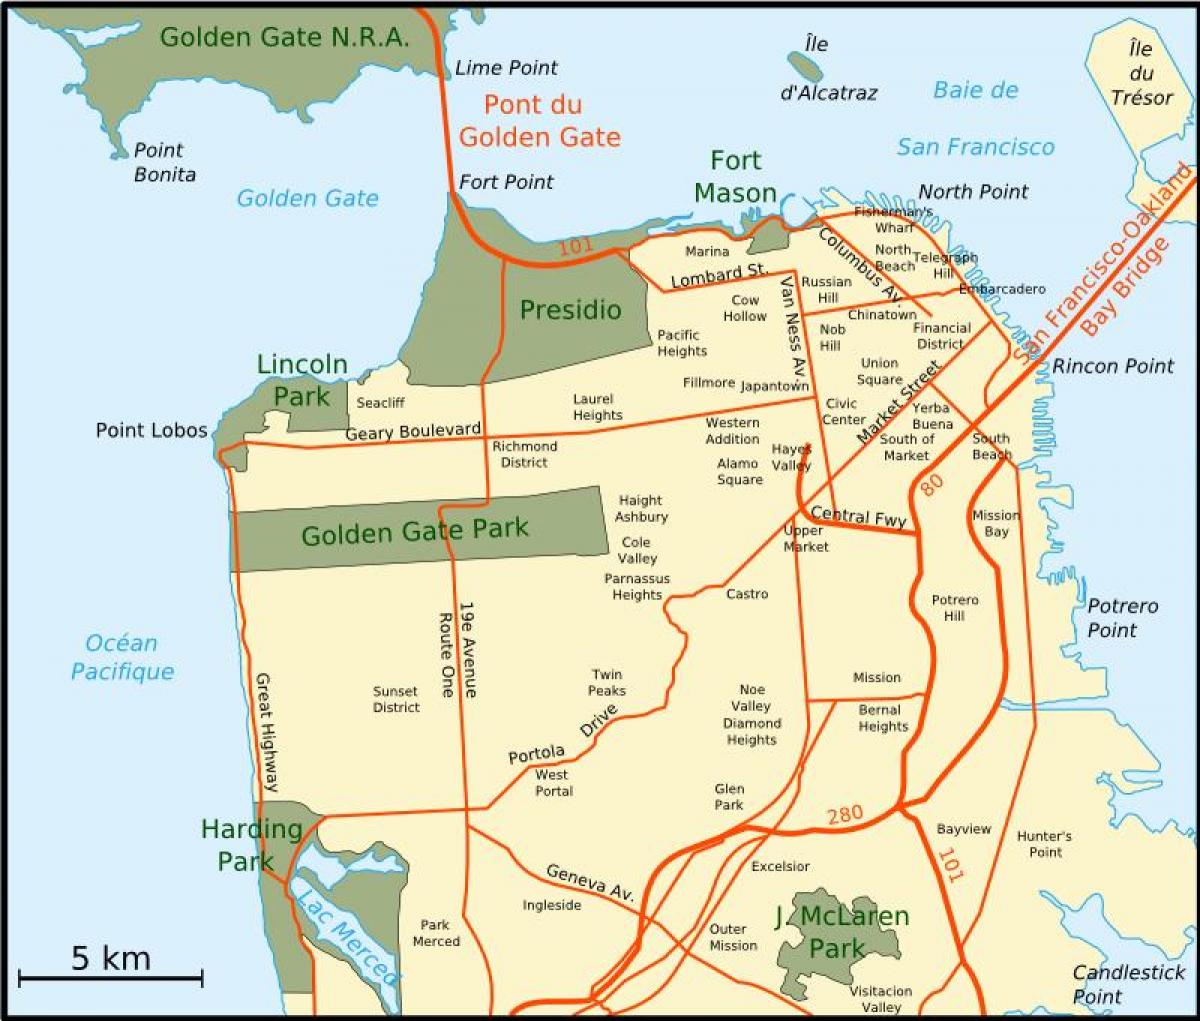 Mapa da maior área da baía de